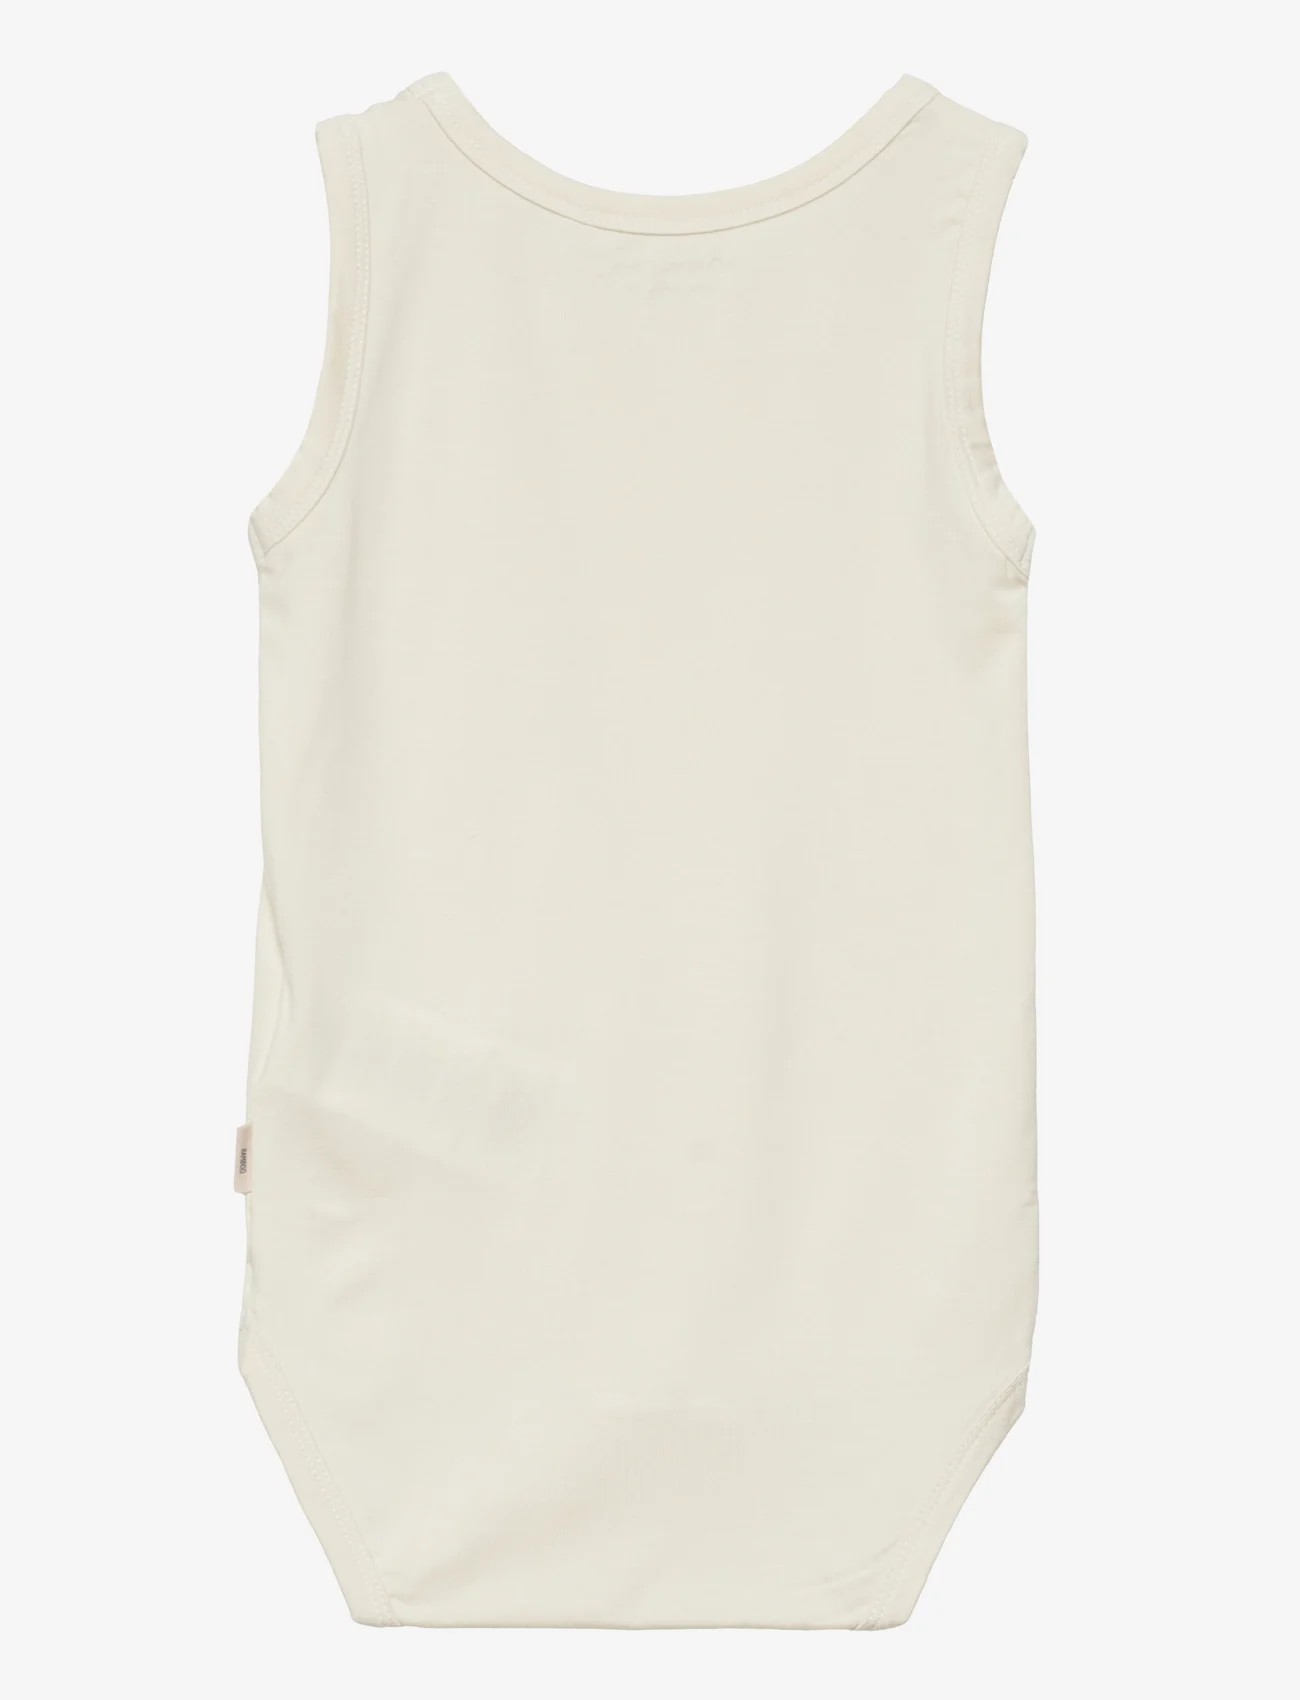 Minymo - Body w/o sleeves - Bamboo - laveste priser - white - 1